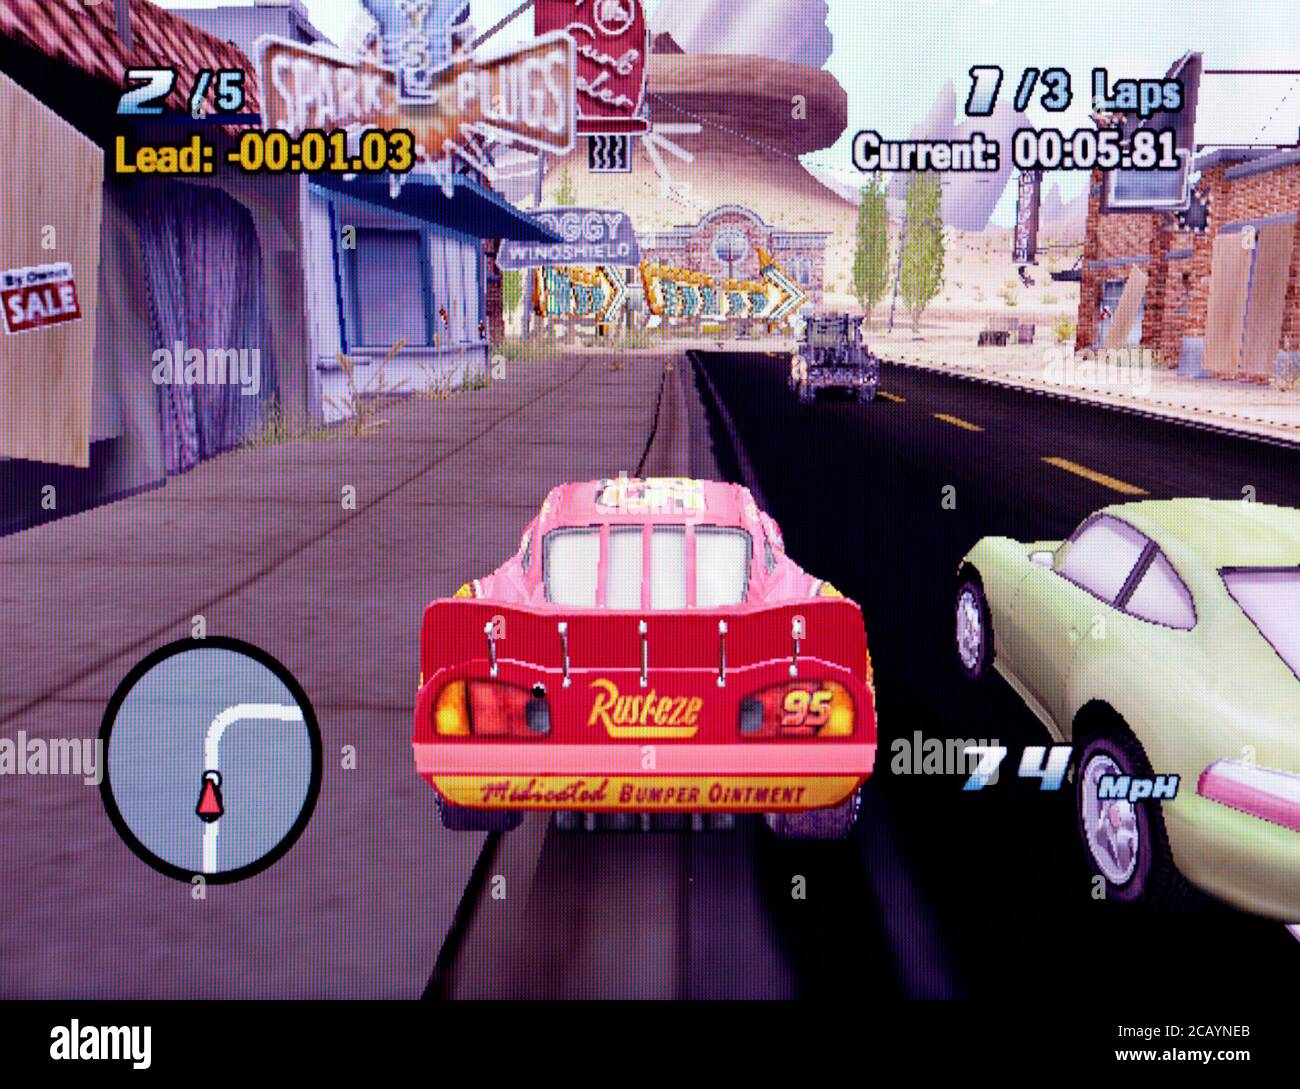 Download Disney Pixar Cars - GameCube ROM  Playstation portable, Disney  pixar cars, Pixar cars